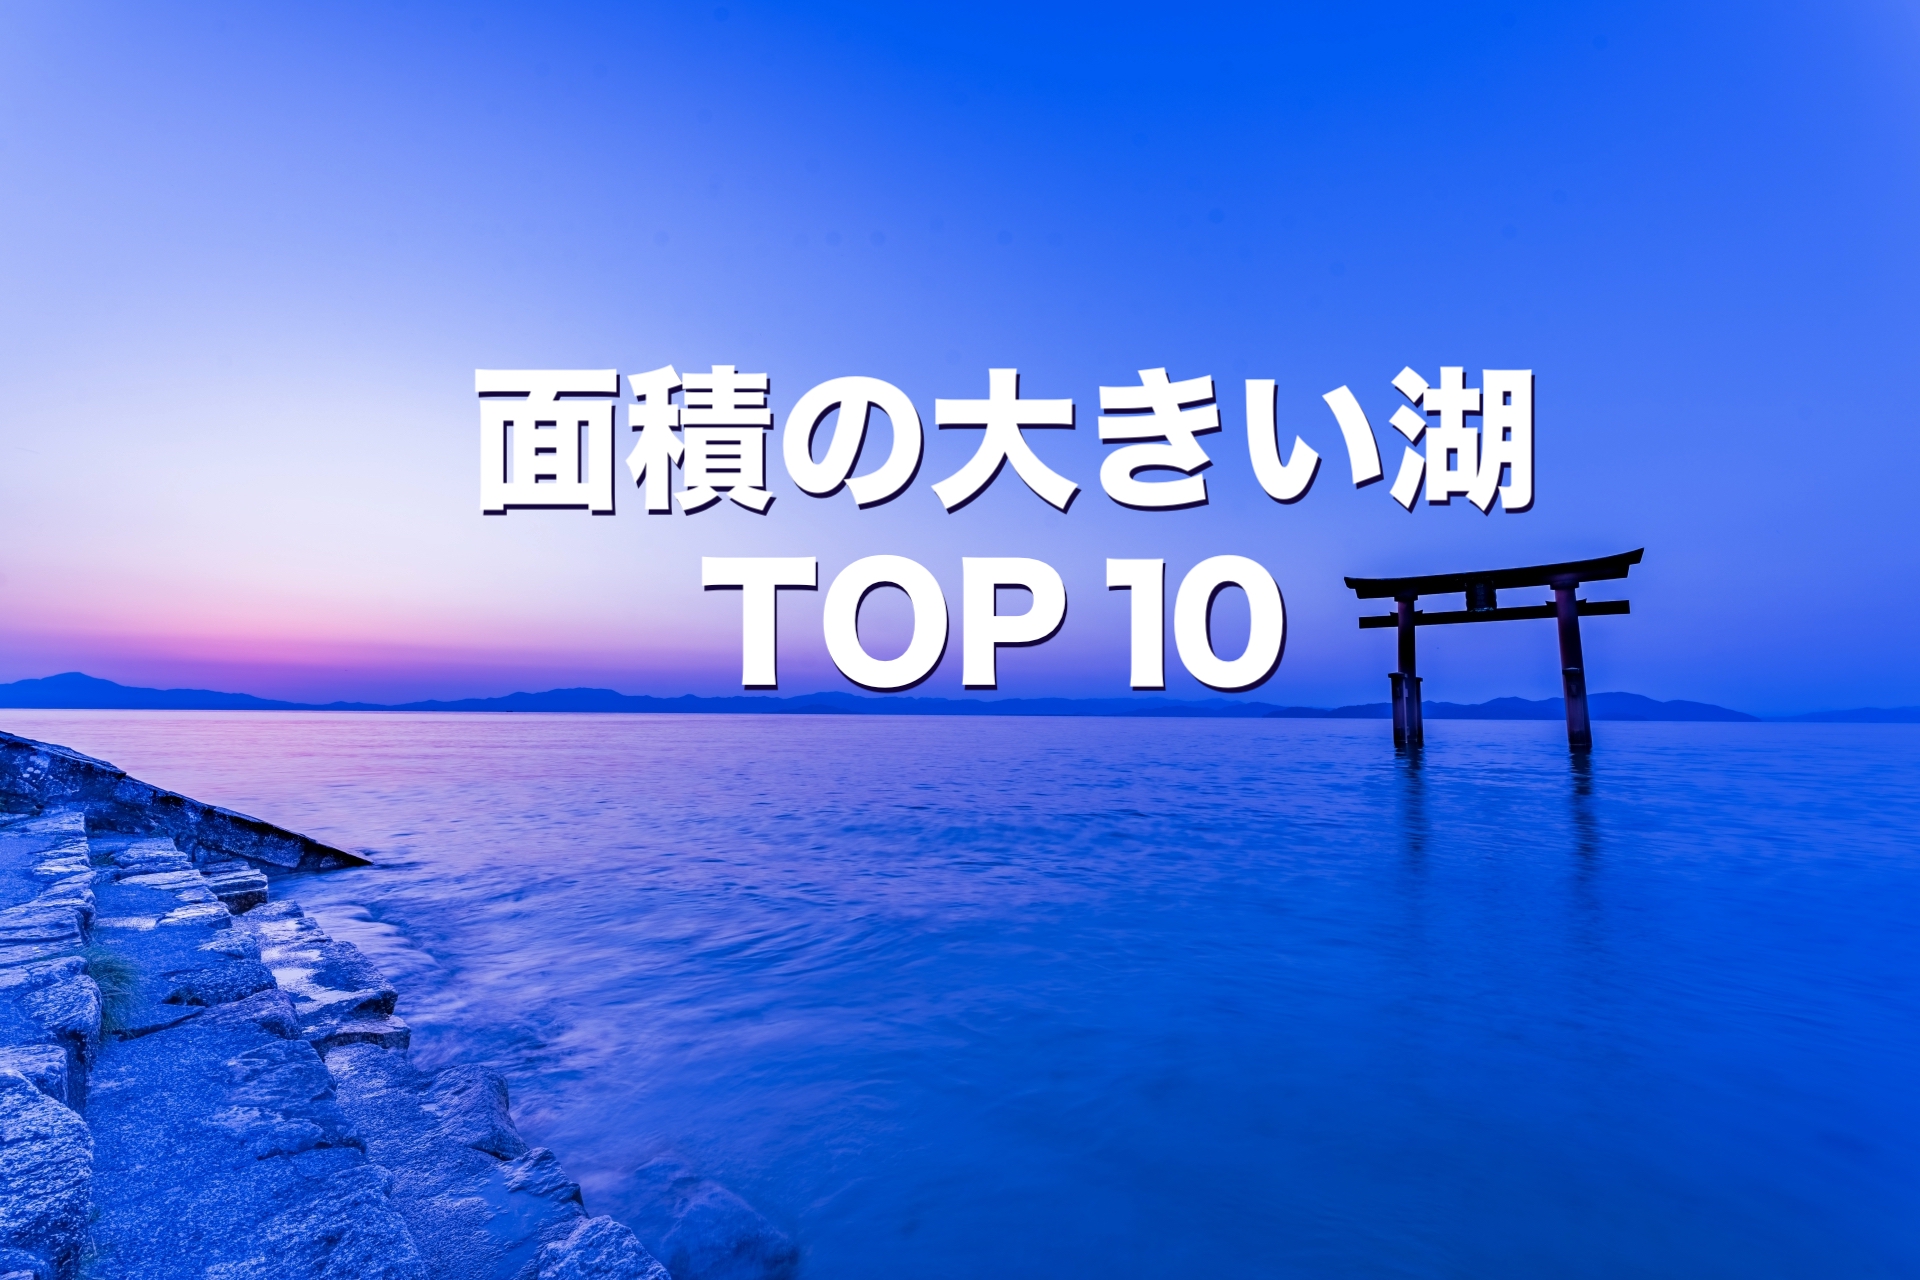 面積の大きい湖 TOP10